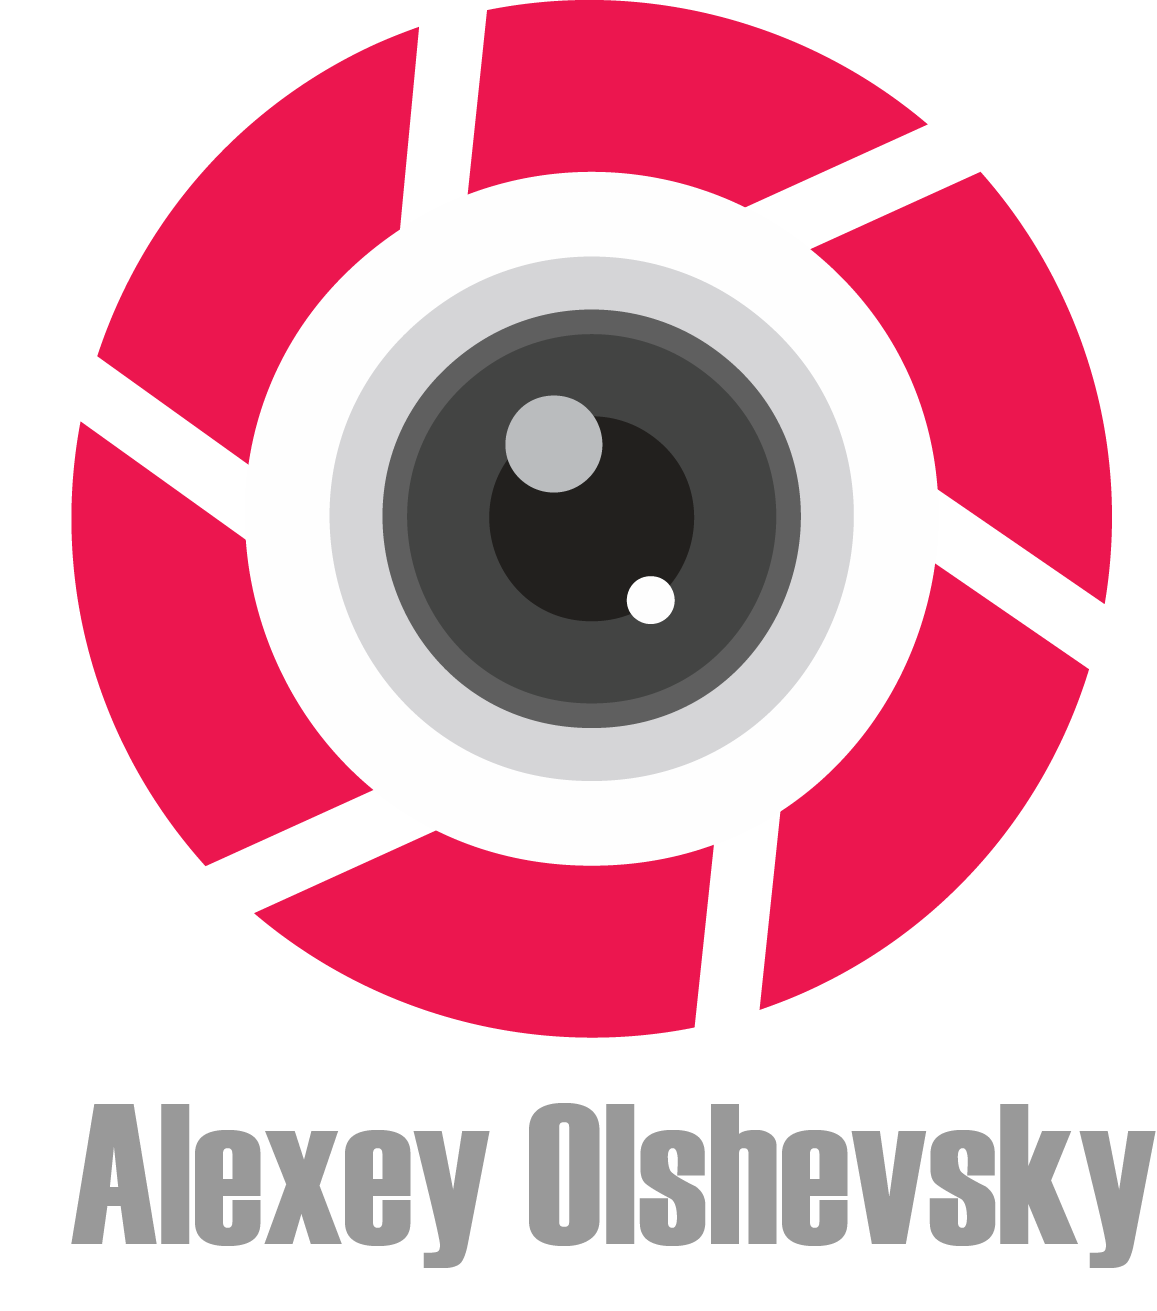 Alexey Olshevsky